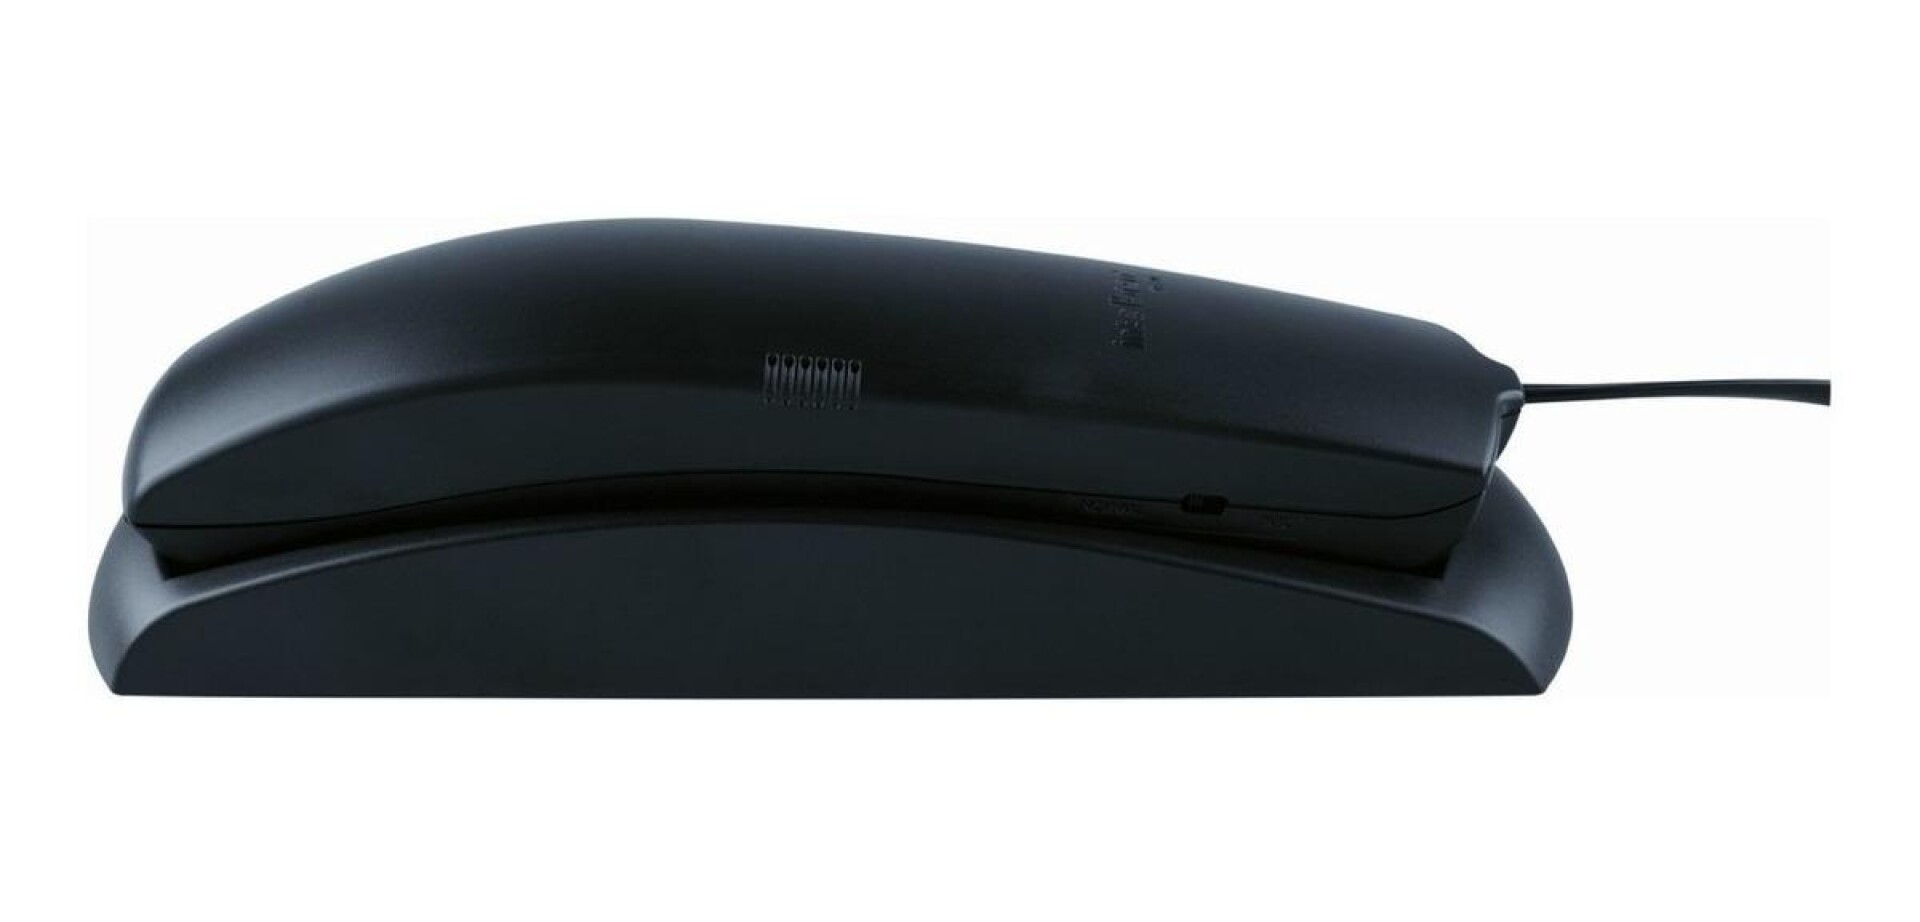 Teléfono Intelbras Tc 20 Fijo - Color Negro 